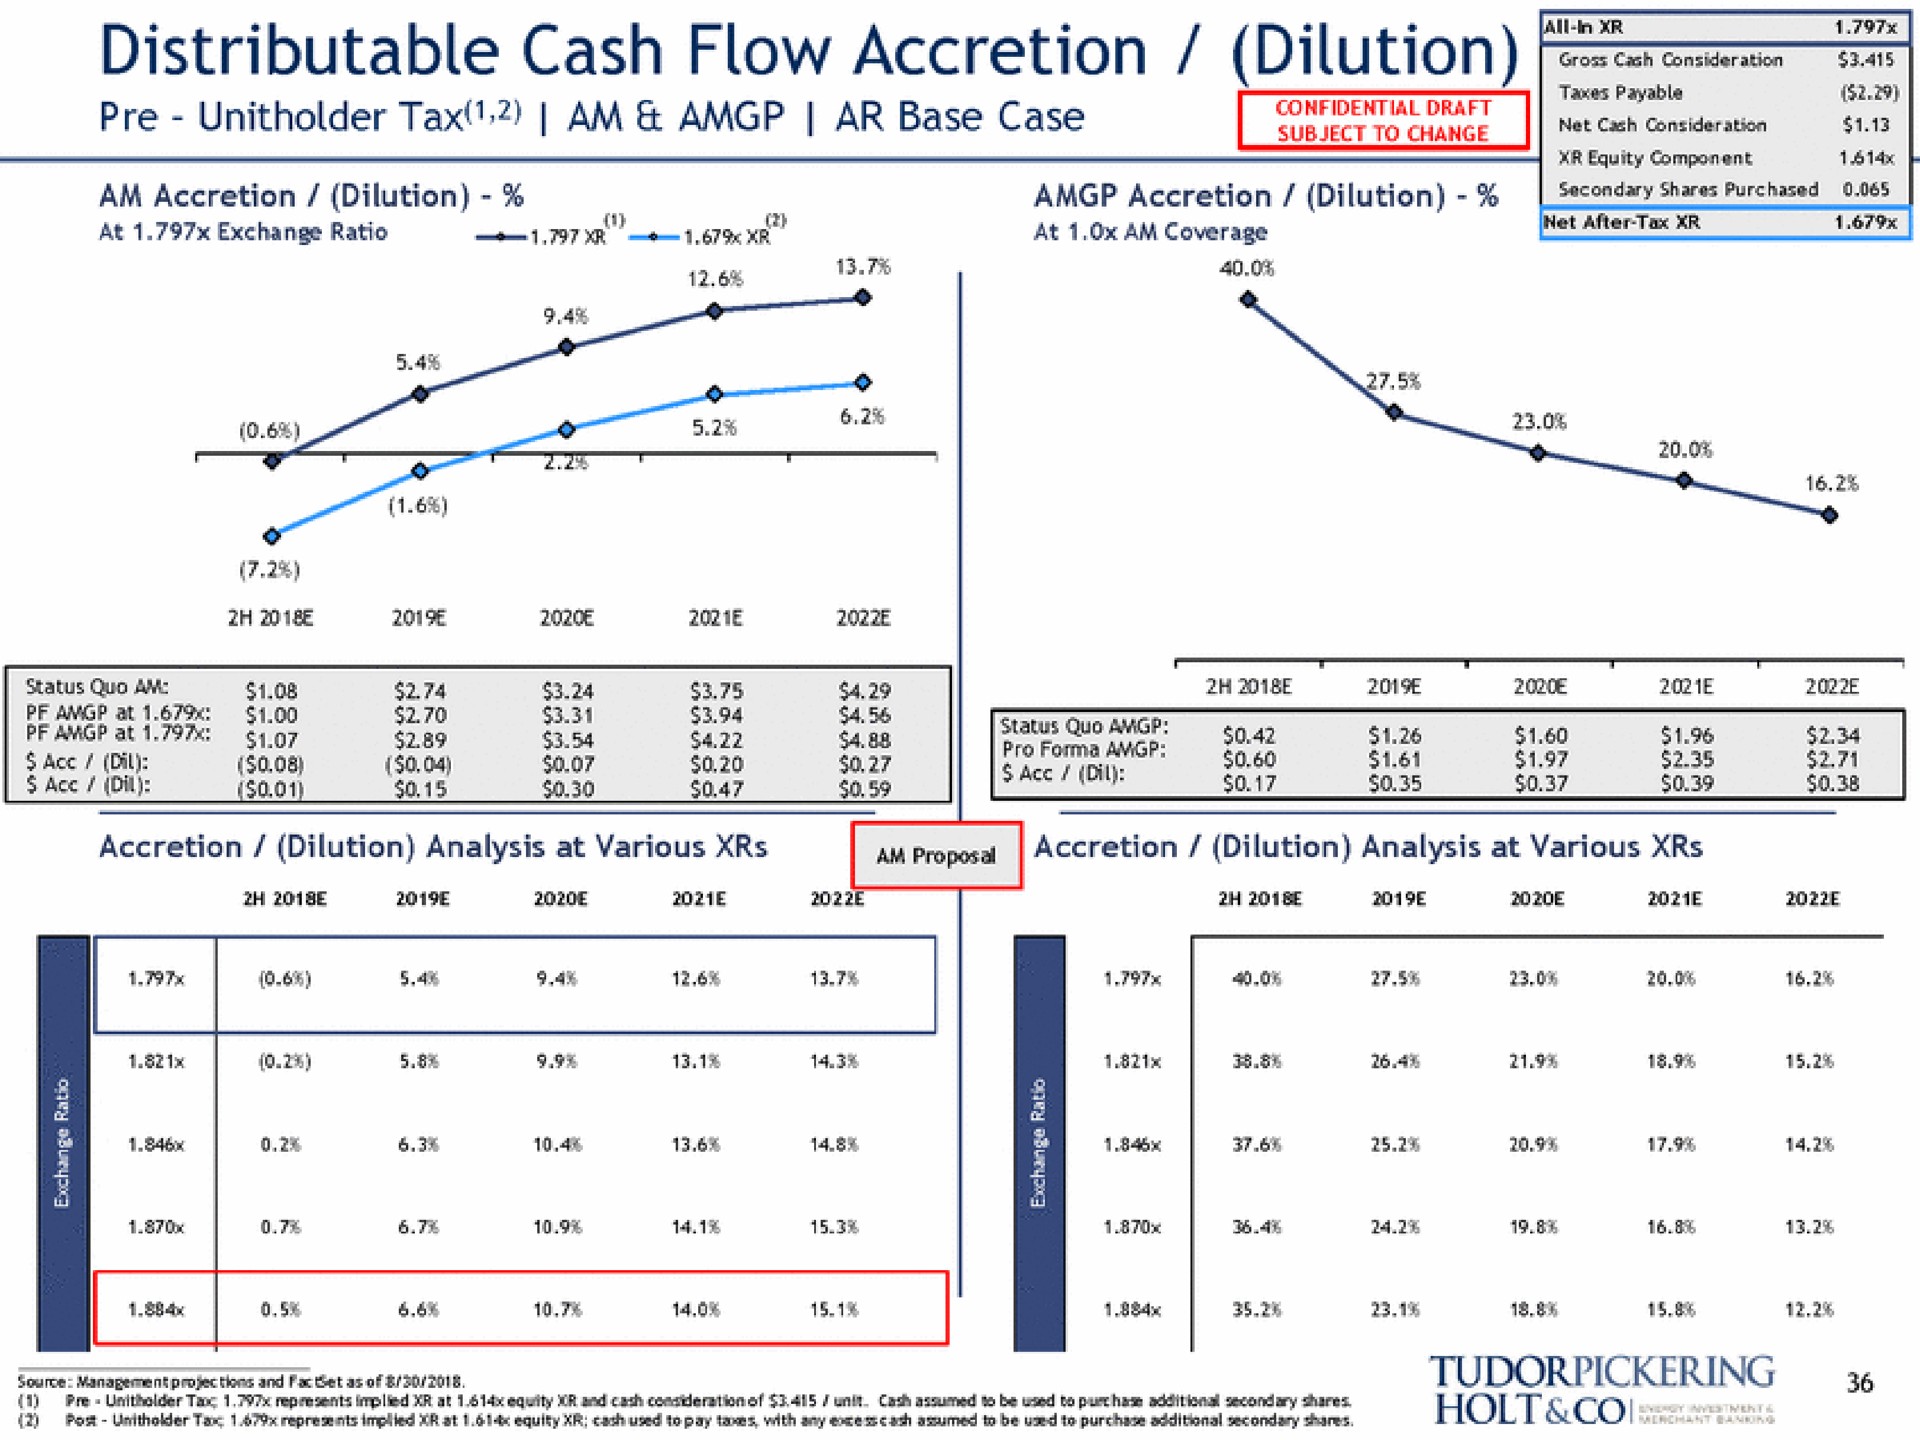 distributable cash flow accretion dilution tax am base case sar ere | Tudor, Pickering, Holt & Co